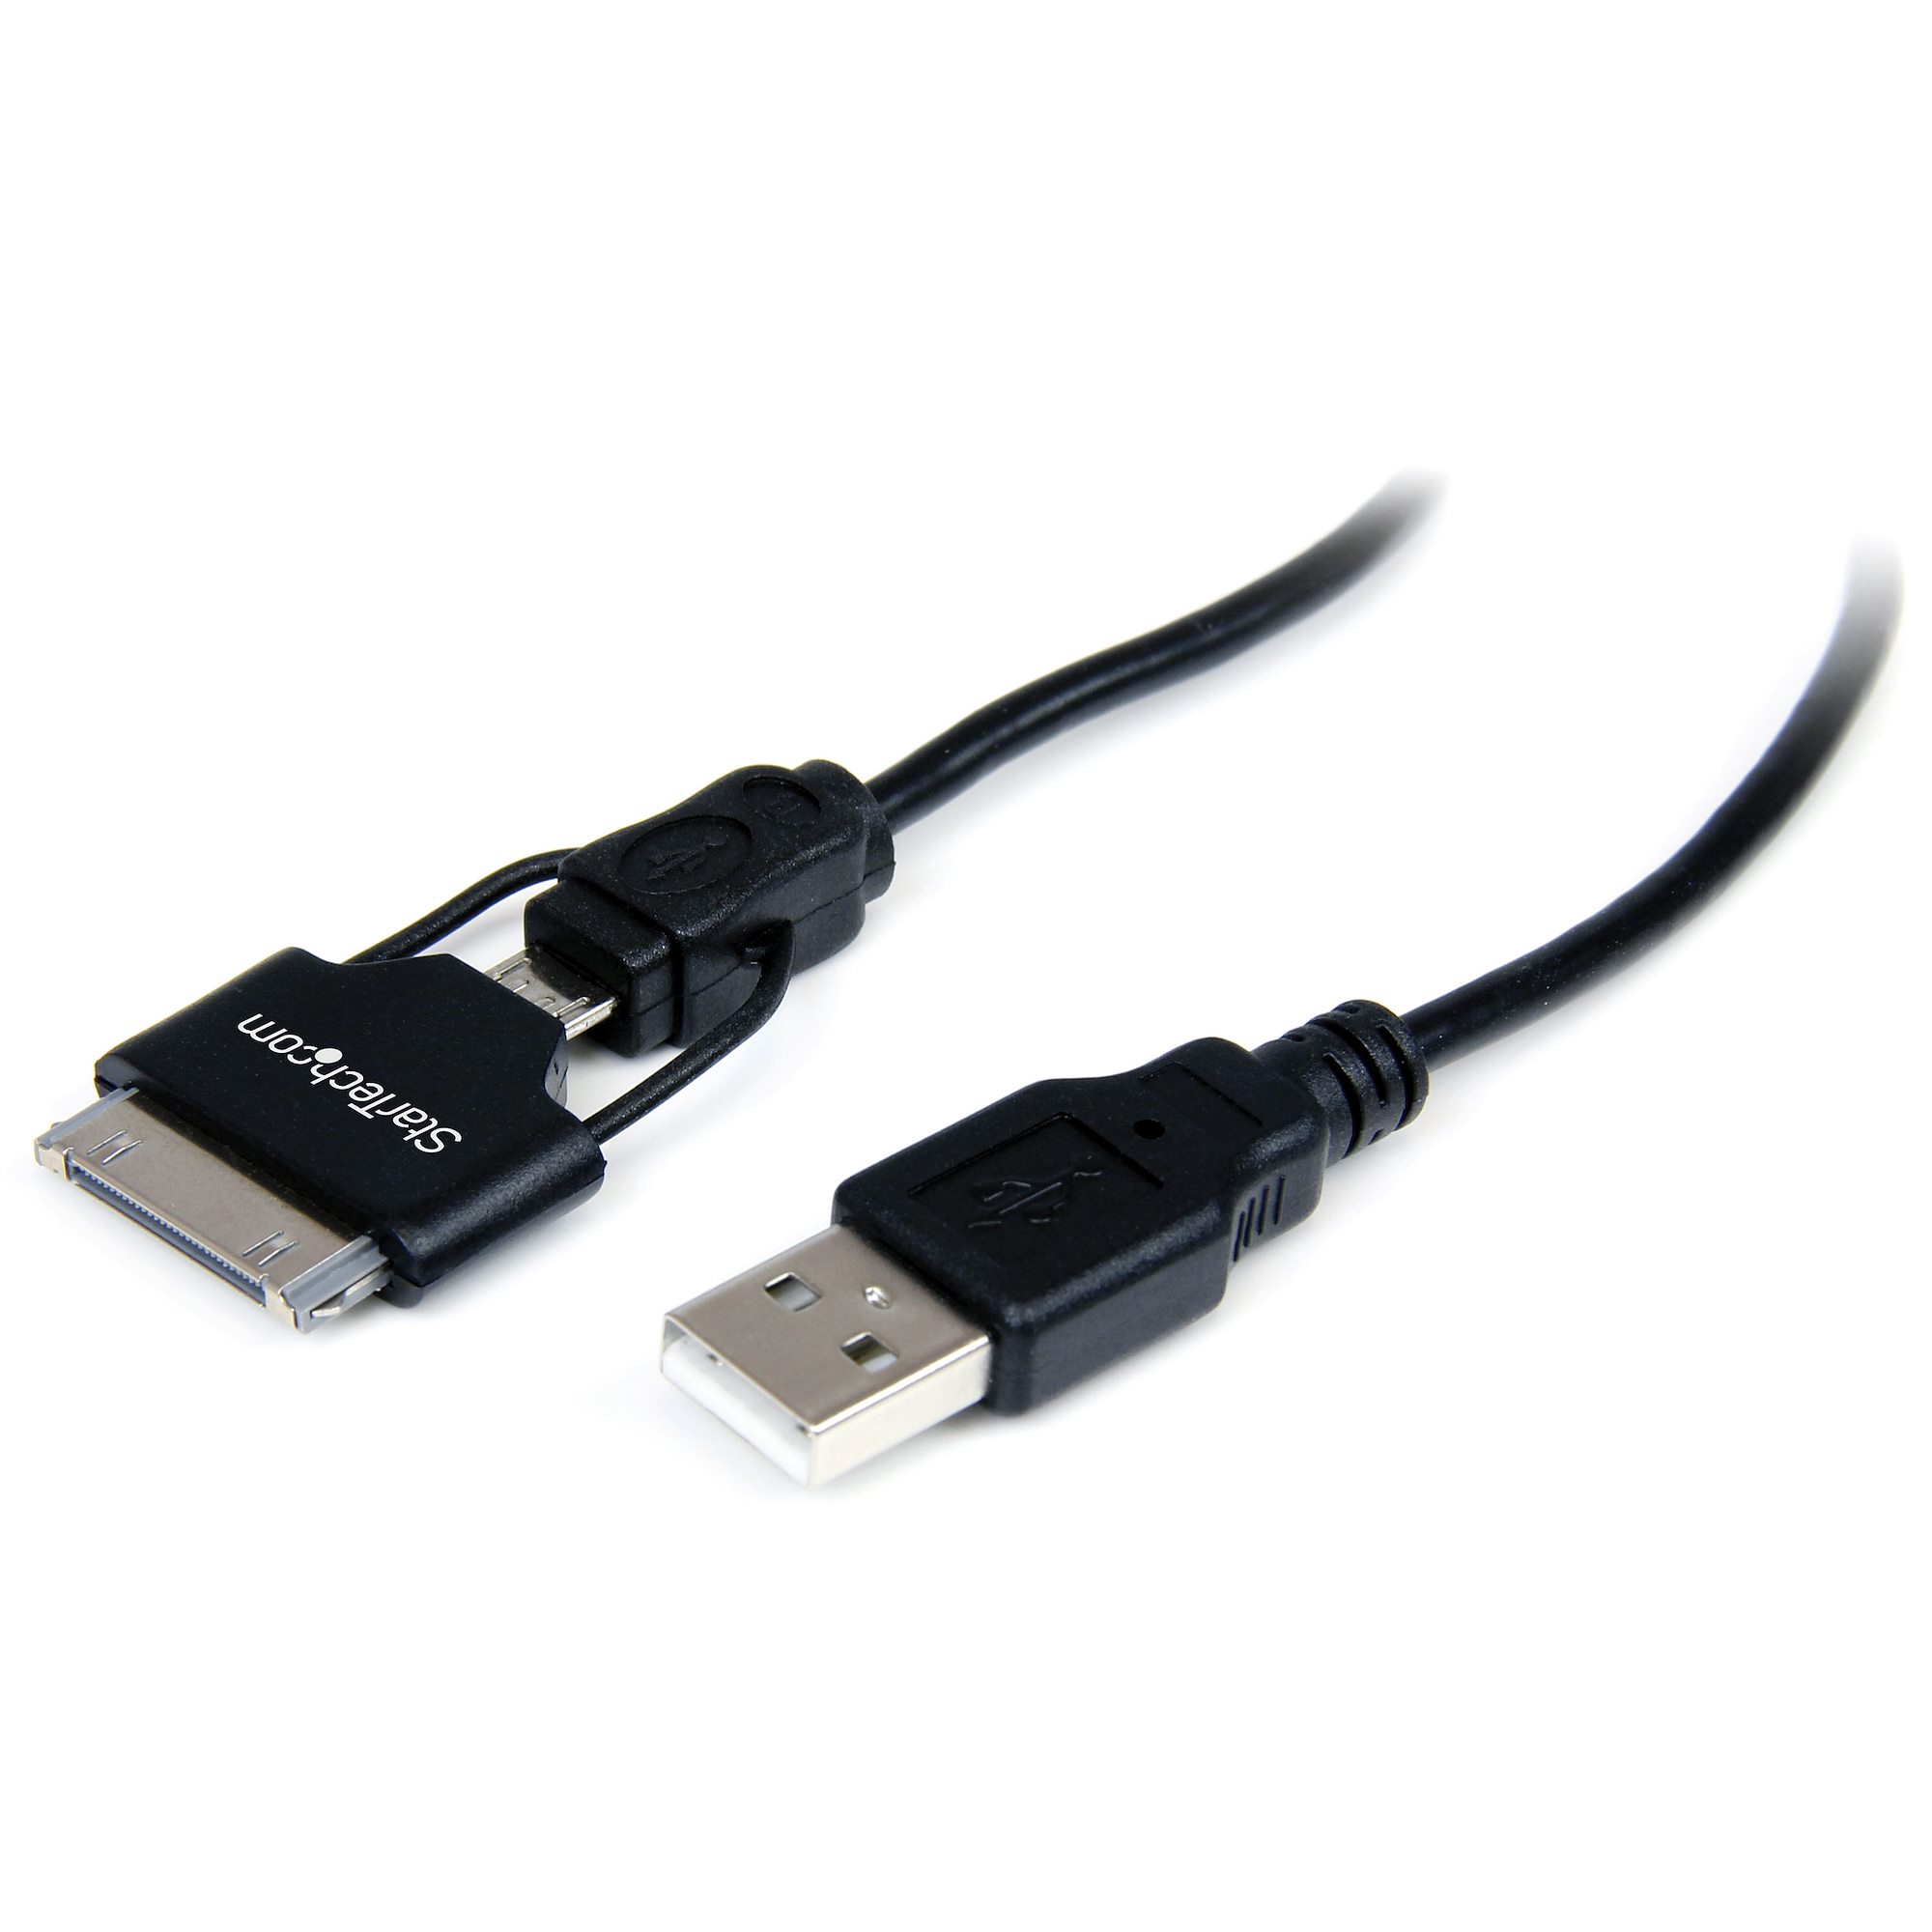 melk wit Ruwe slaap Bedoel 0.65m Apple Dock - USB / Micro USB Cable - 30-pin Dock Connector Kabels  voor iPod, iPhone en iPad | StarTech.com België